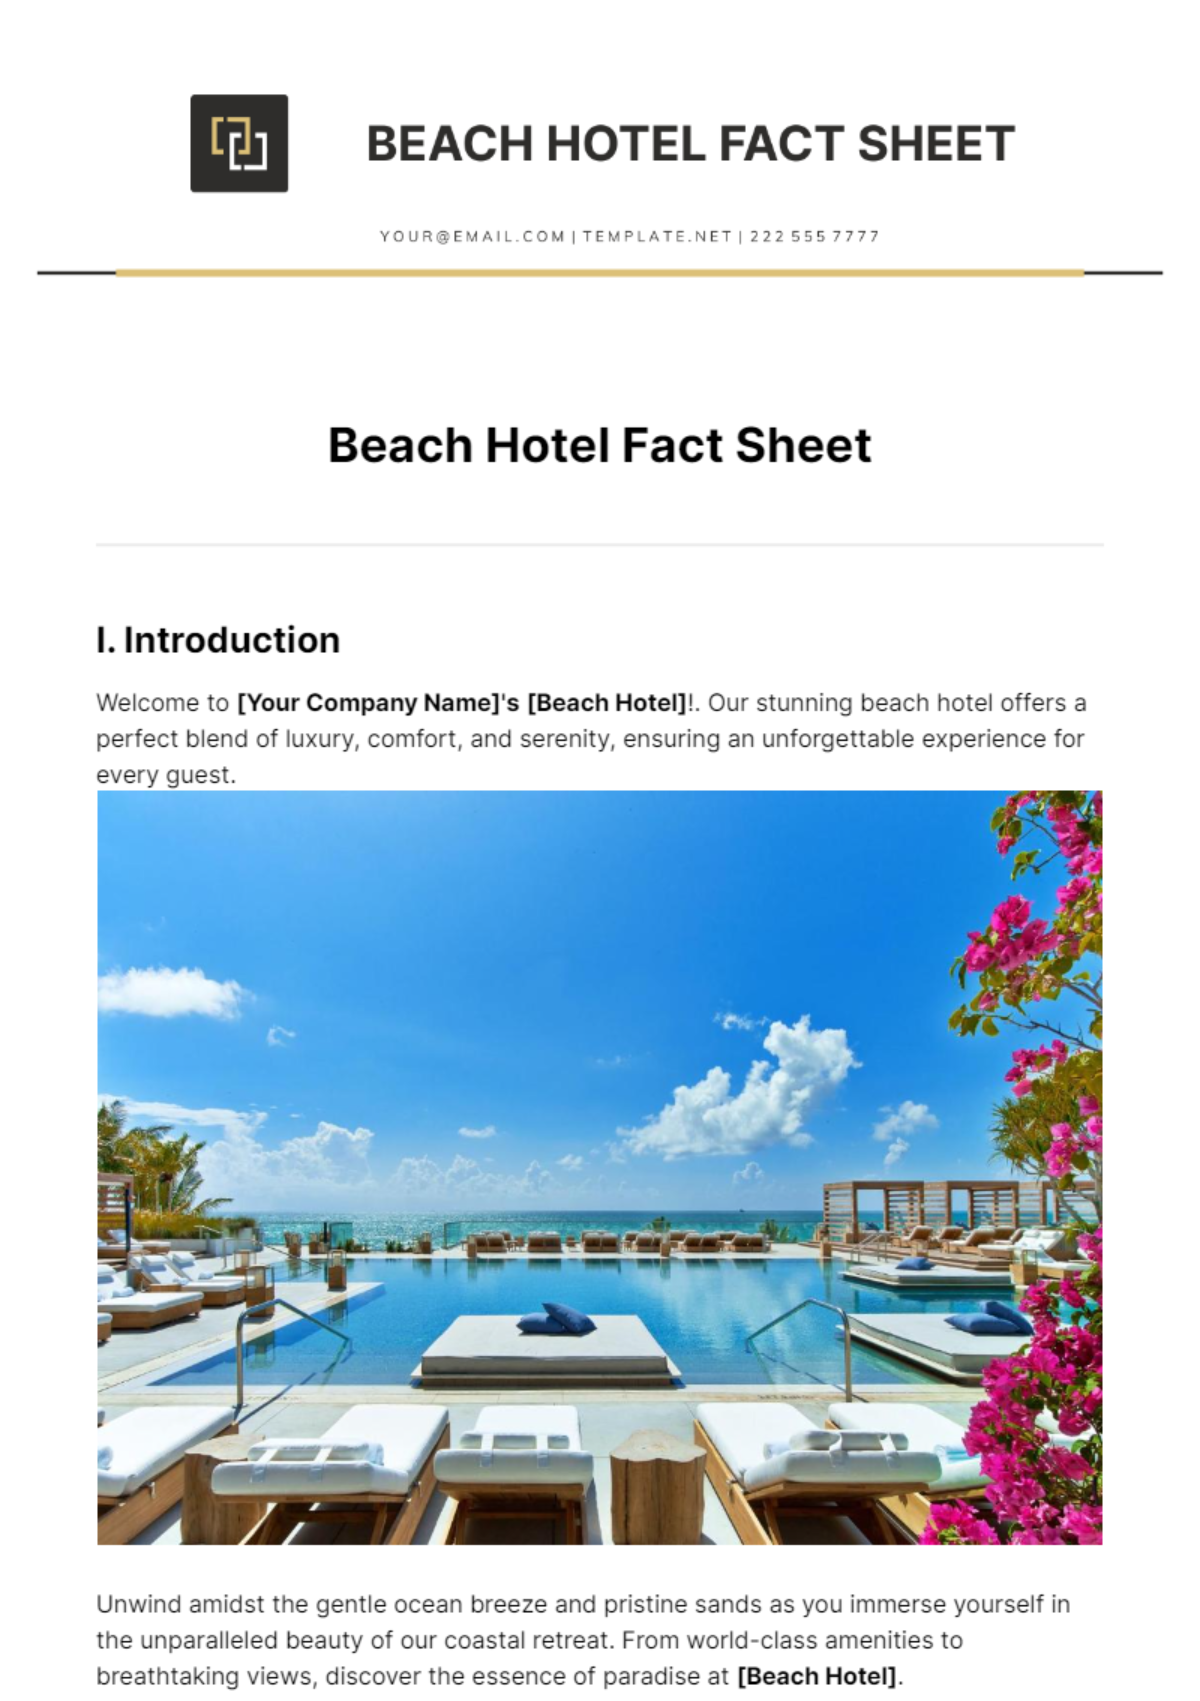 Free Beach Hotel Fact Sheet Template